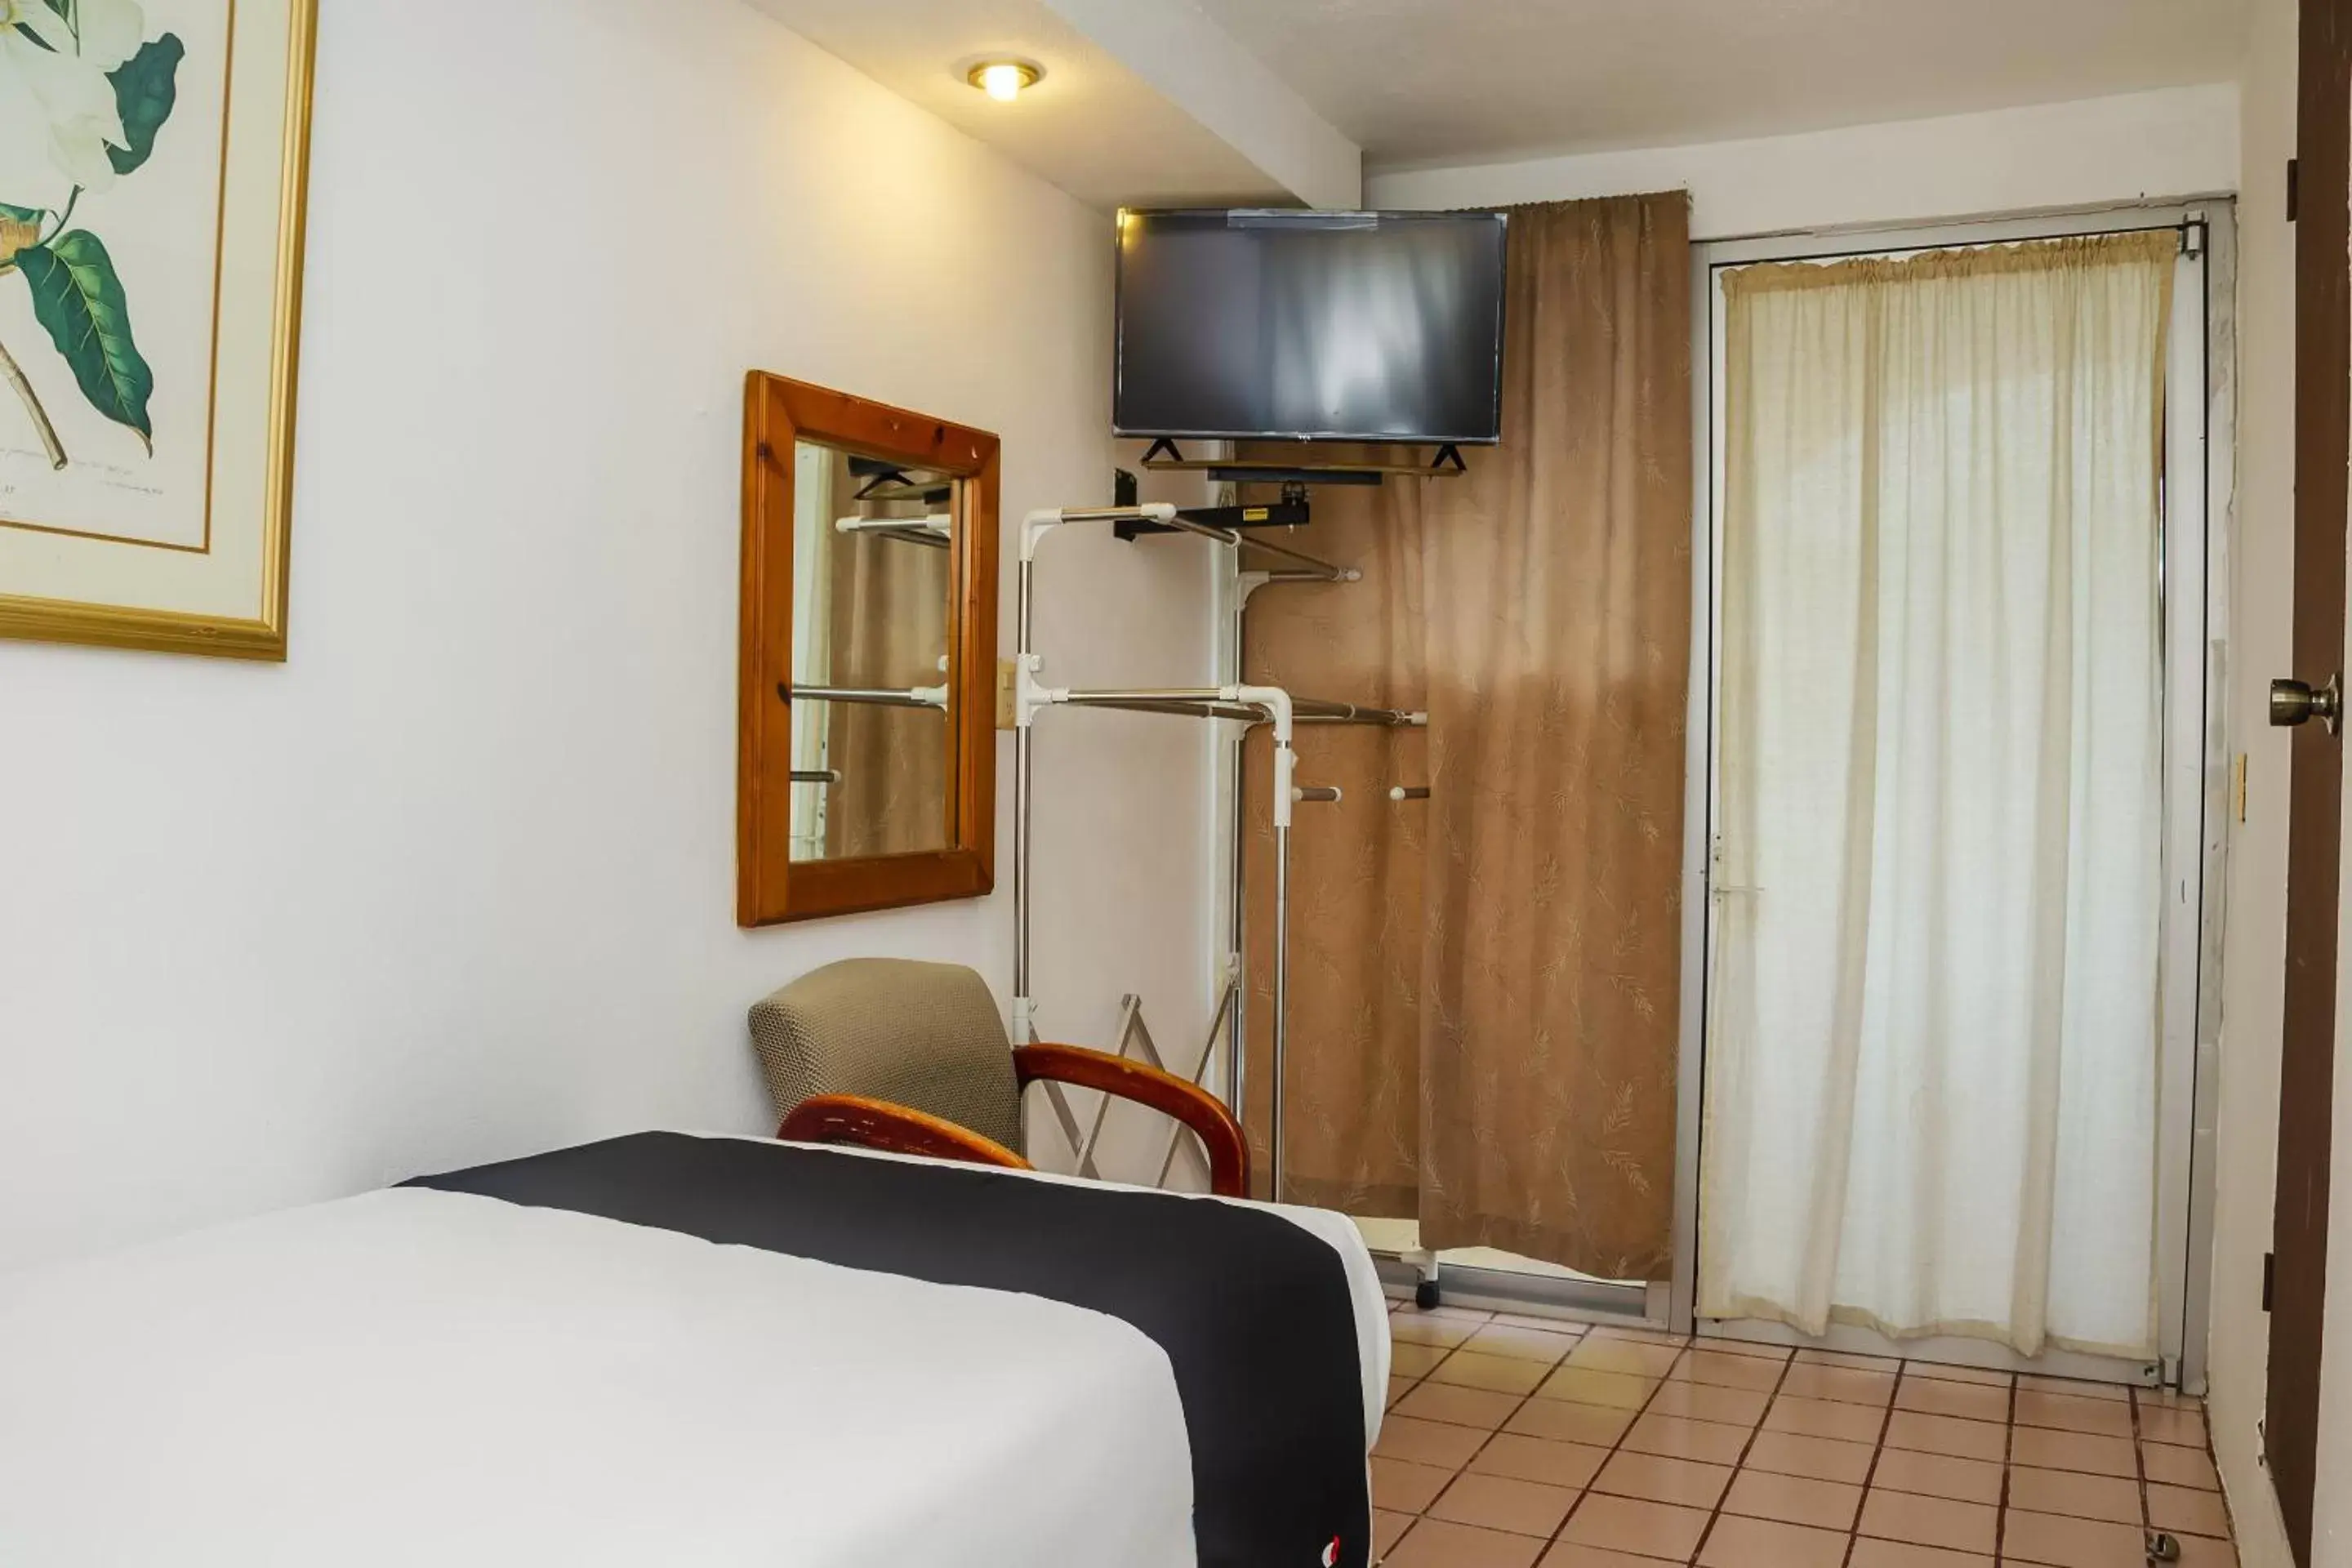 Bedroom, TV/Entertainment Center in Capital O Hotel Dos Mares, Cabo San Lucas